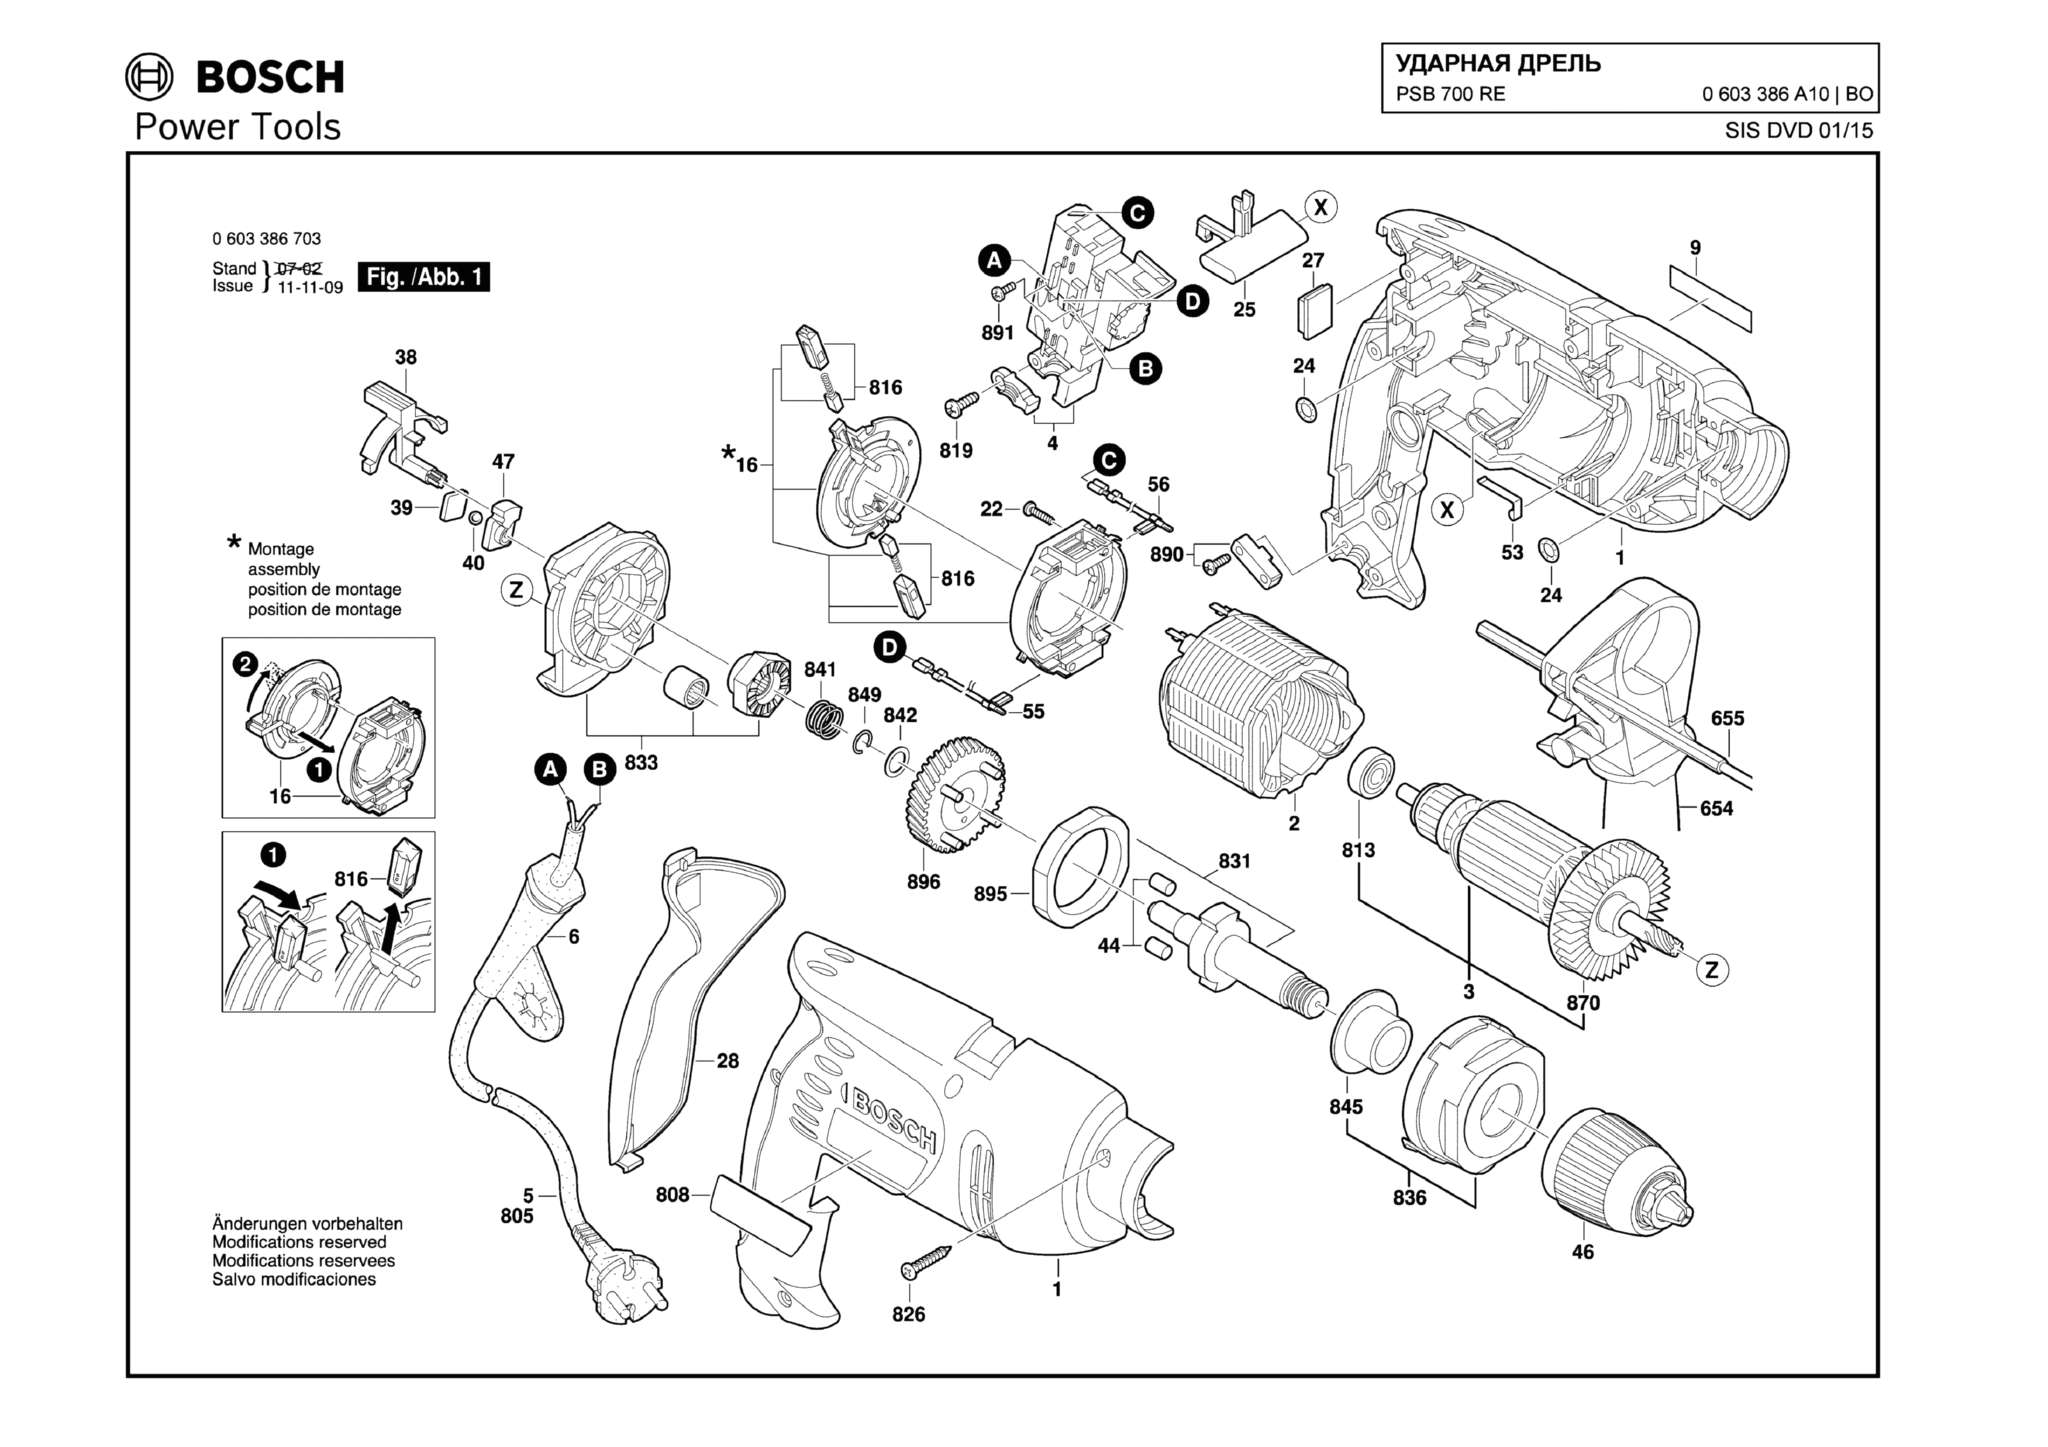 Запчасти, схема и деталировка Bosch PSB 700 RE (ТИП 0603386A10)